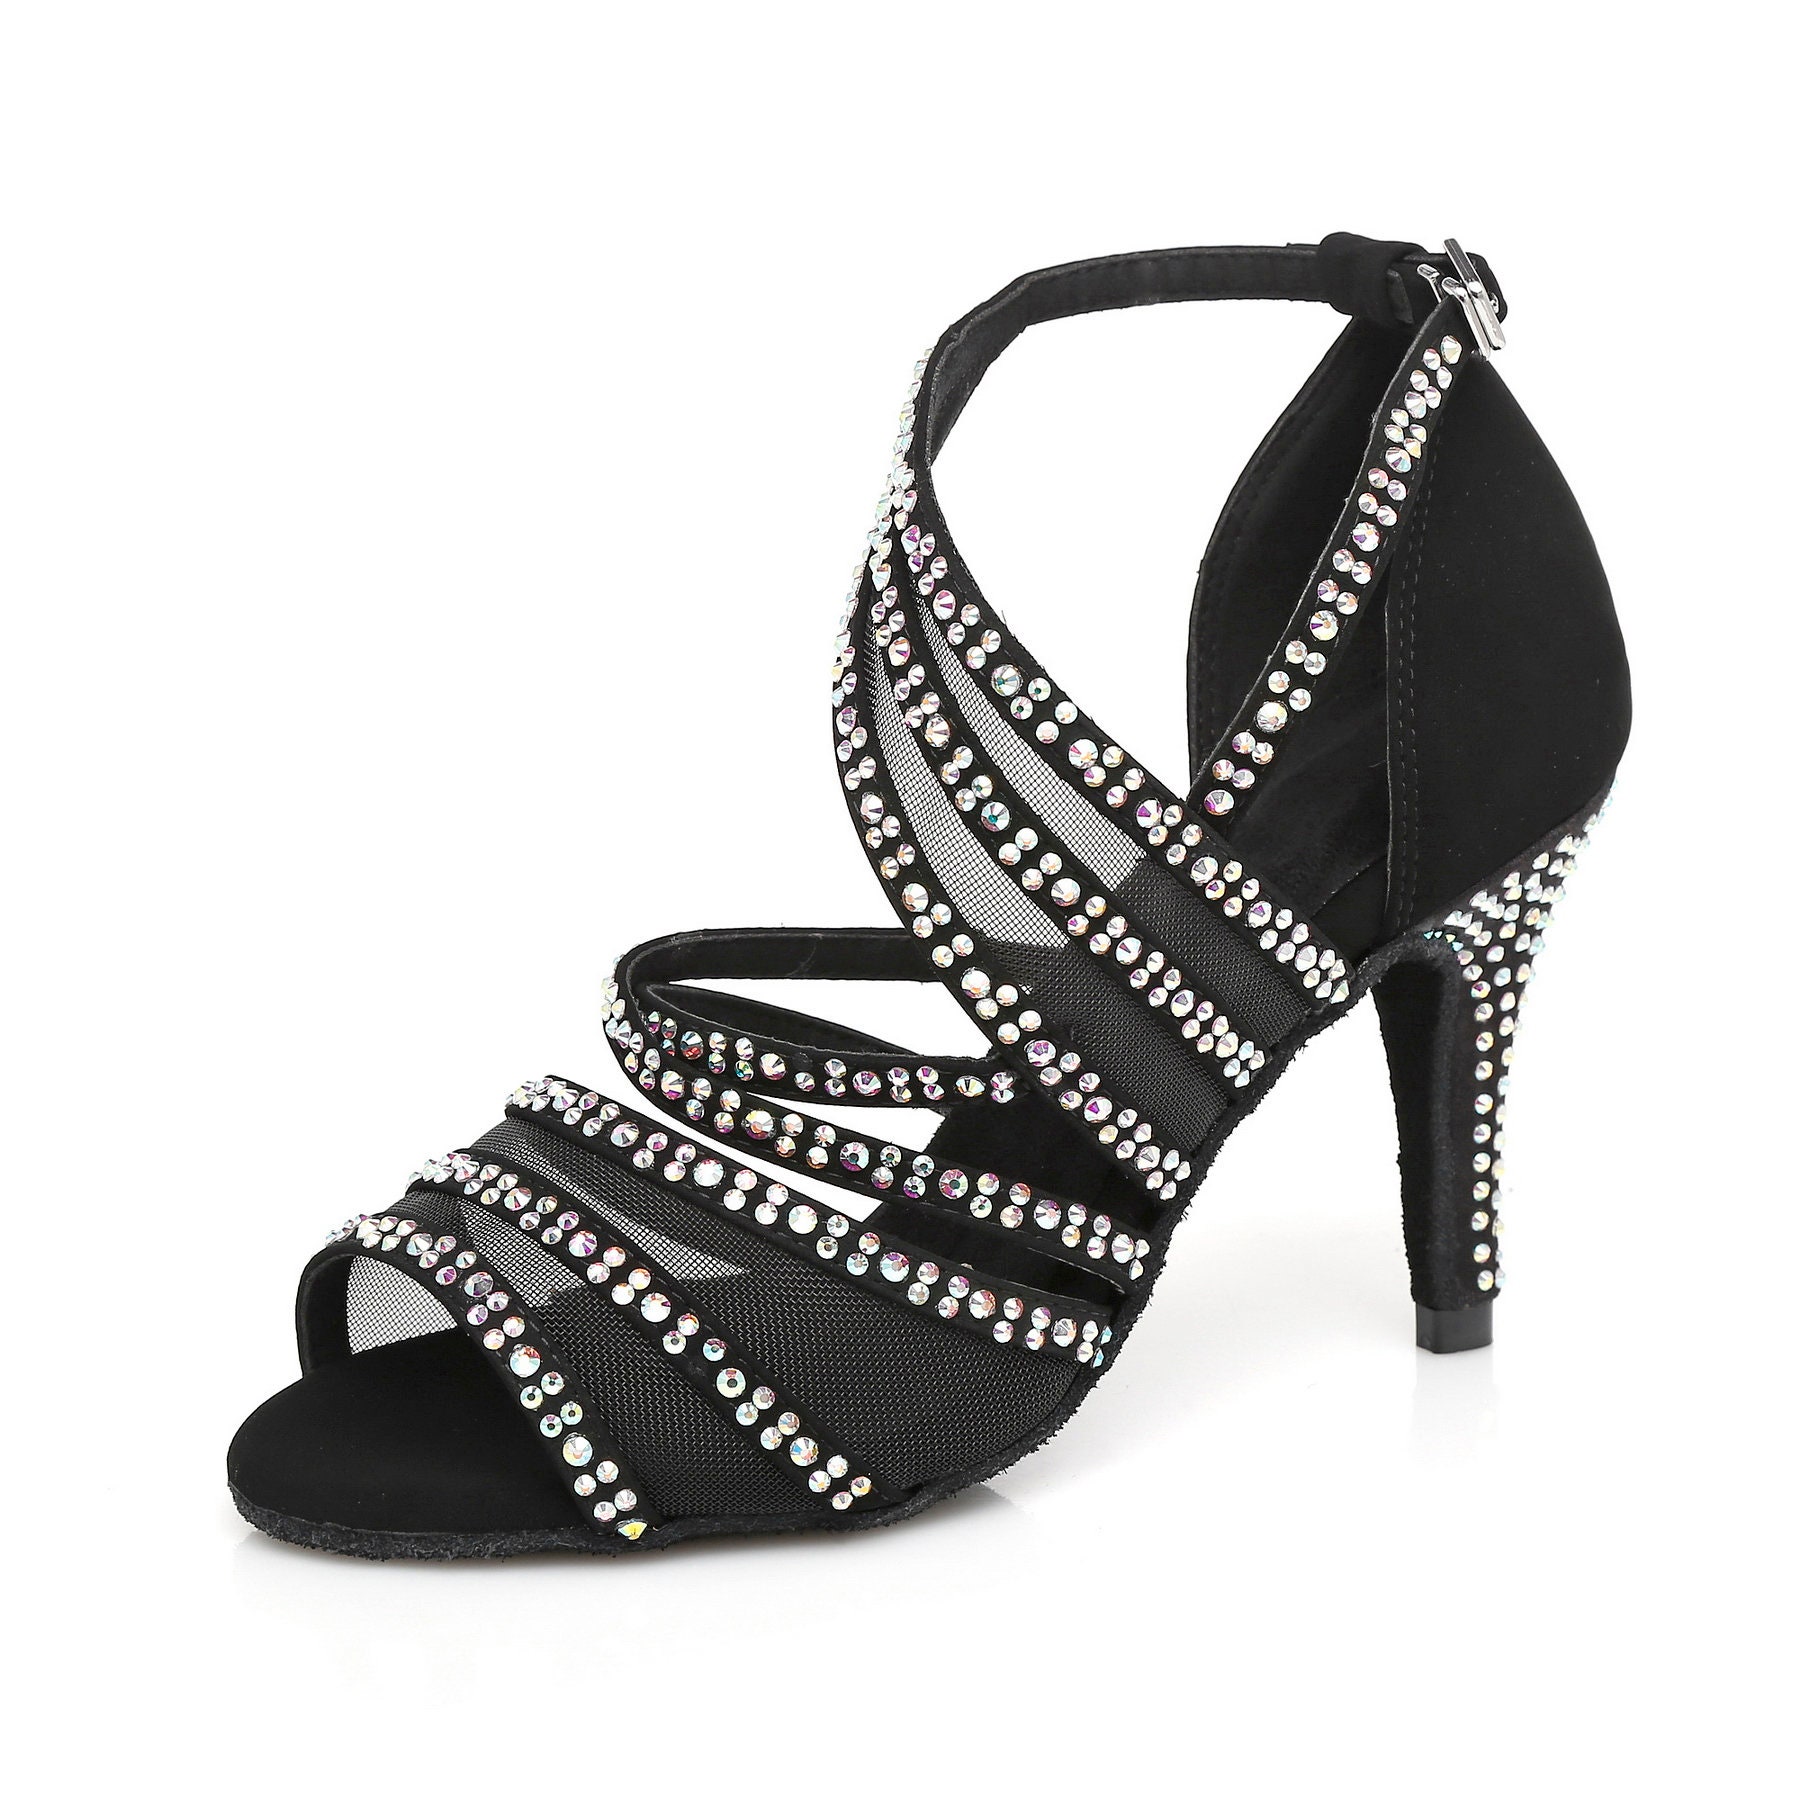 Dance Shoes Bridal shoes Salsa Bachata shoes Tango Shoes | Etsy